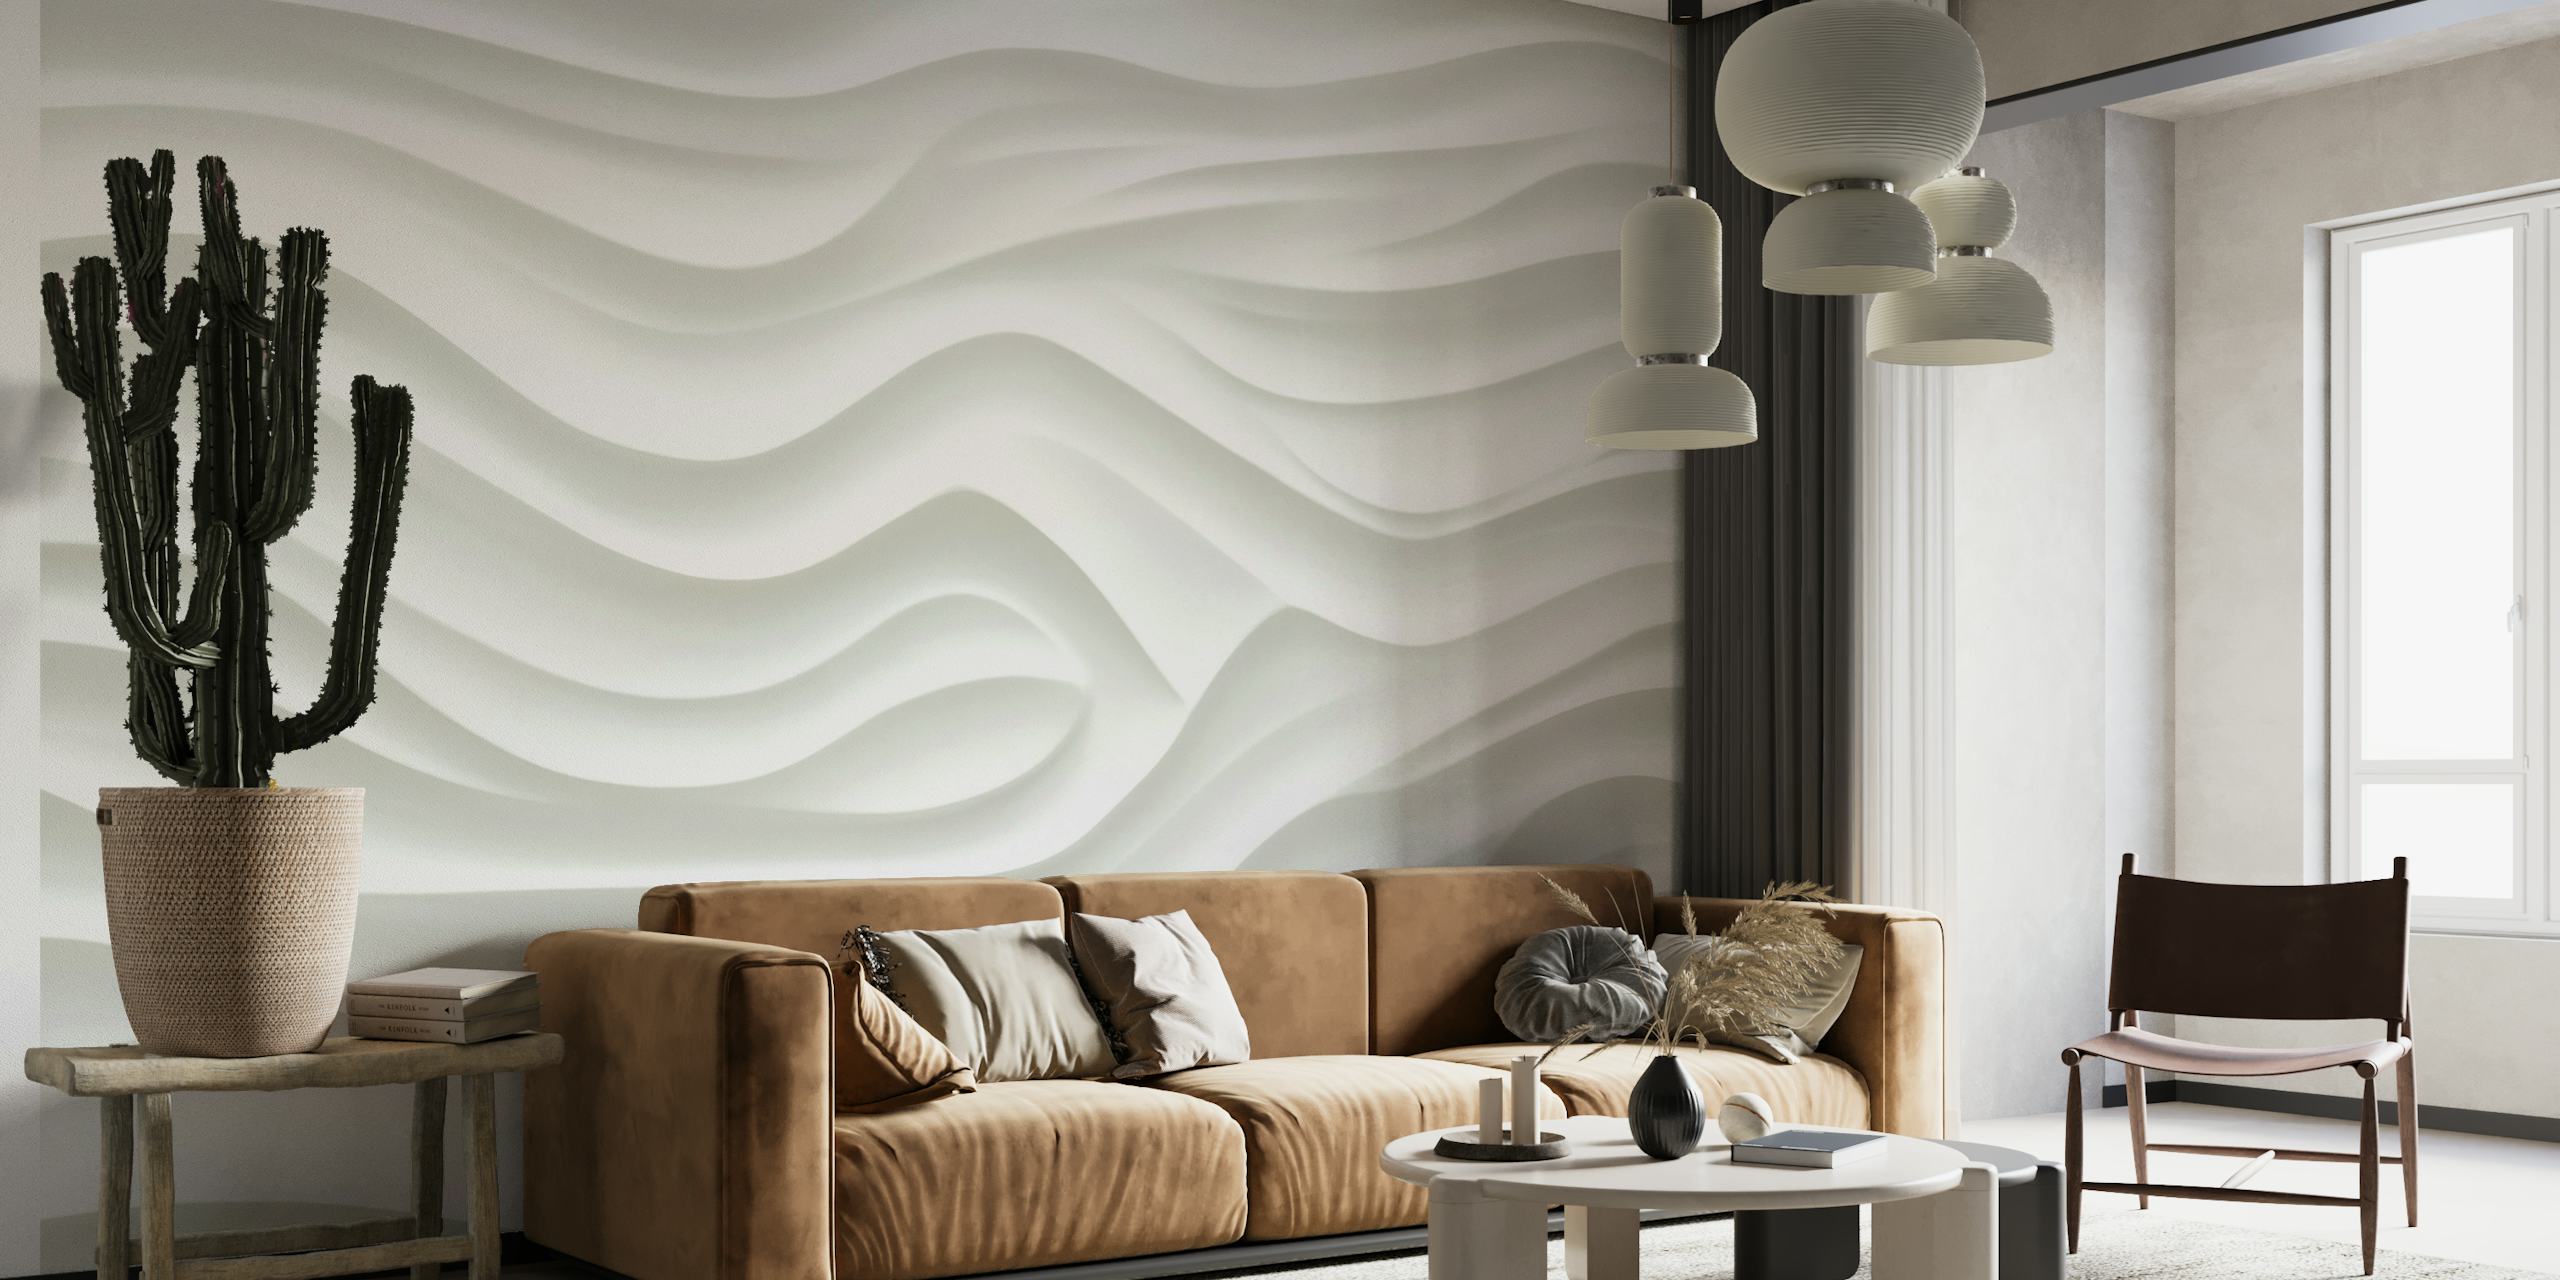 Mural de parede texturizado em relevo branco com efeito de superfície escultural semelhante a 3D.